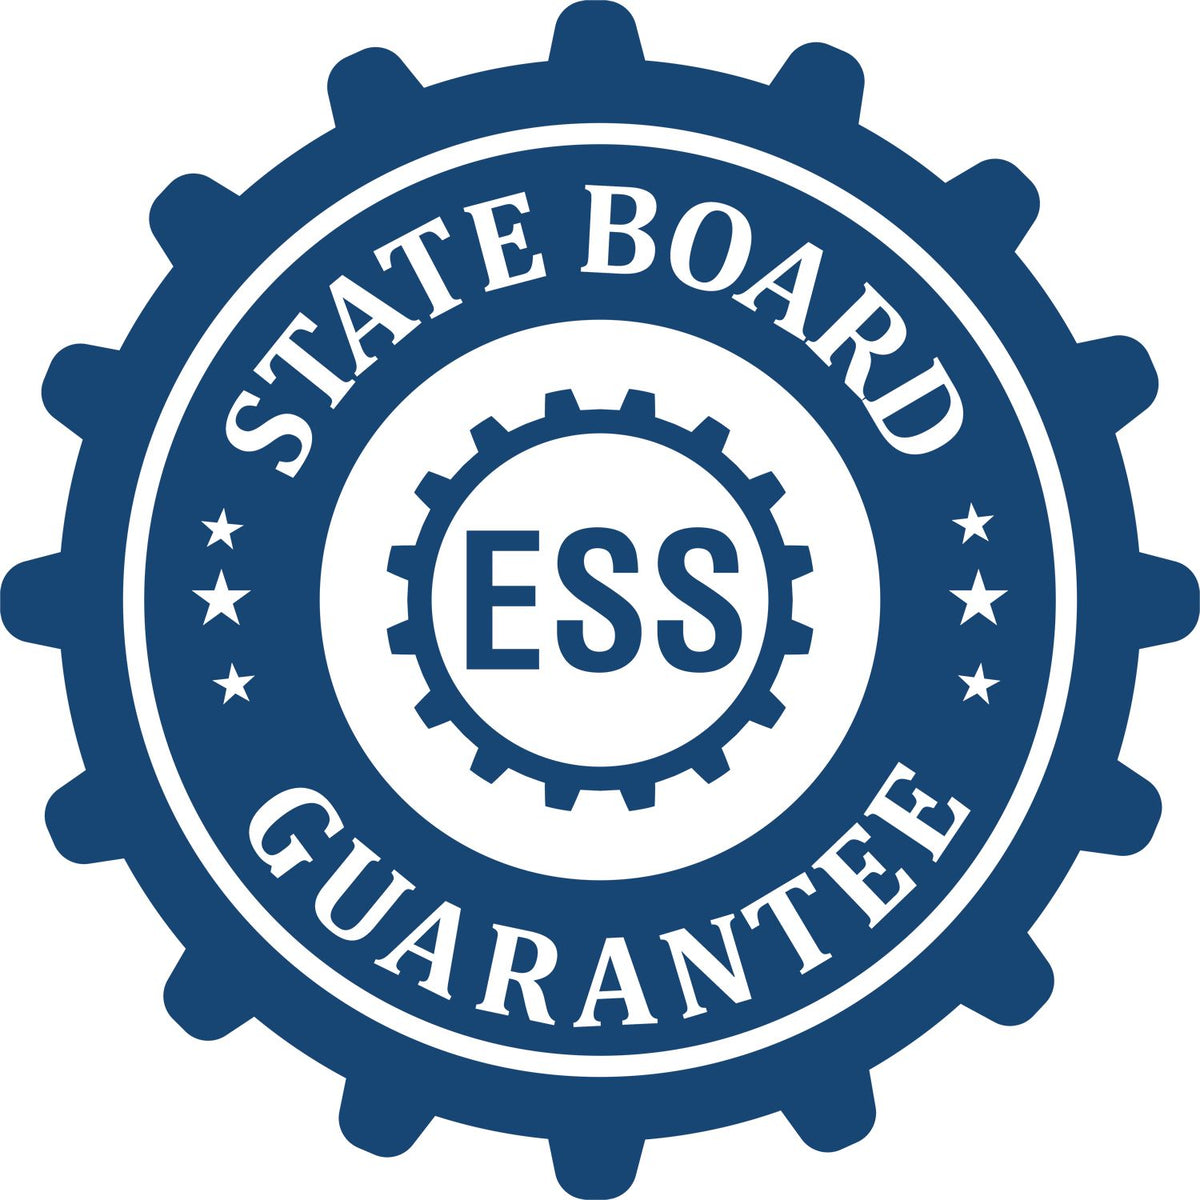 Geologist Long Reach Desk Seal Embosser 3022GEO State Board Guarantee